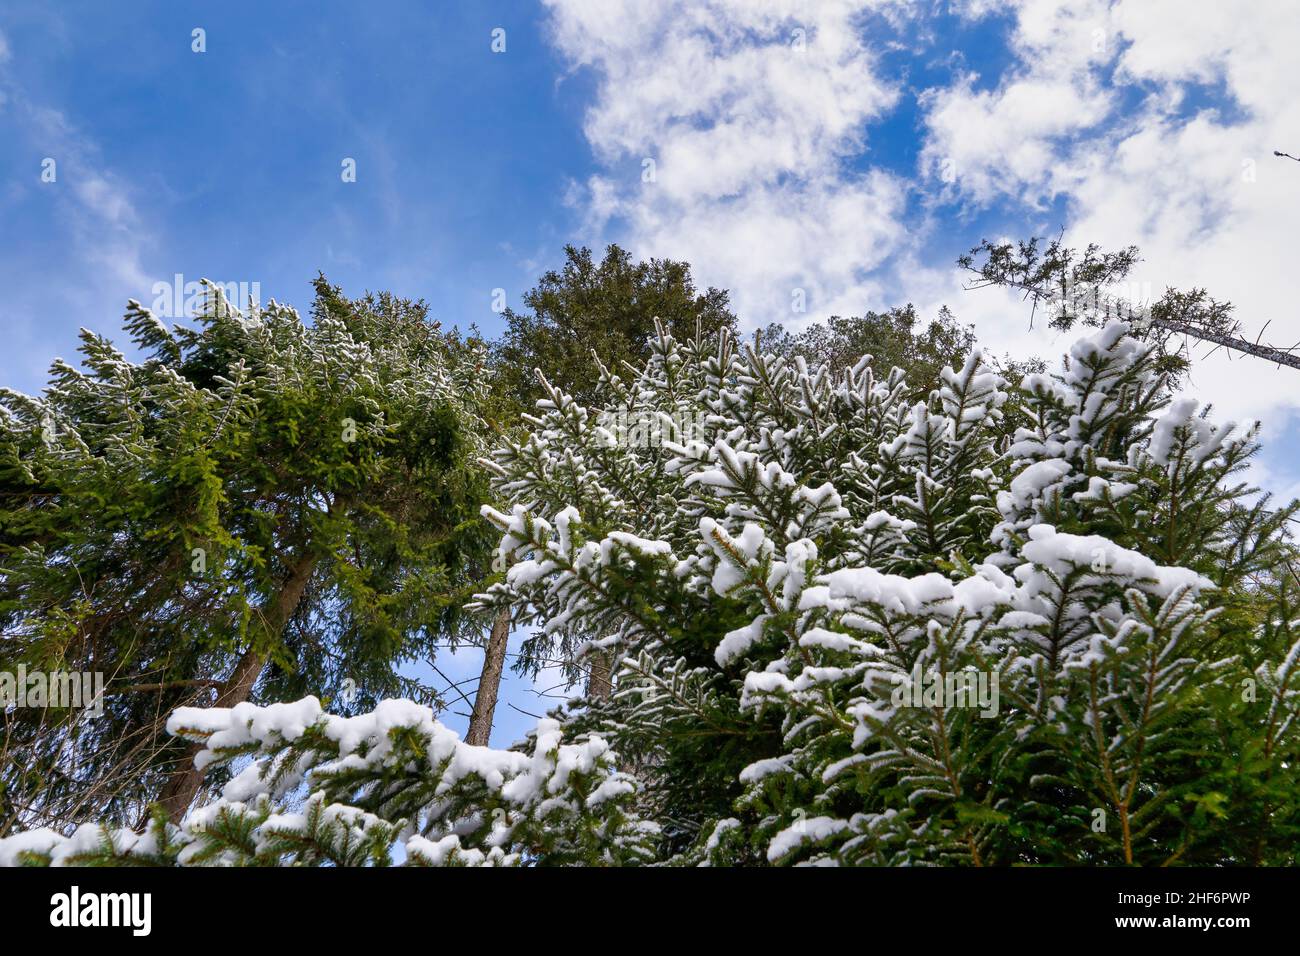 Forêt d'hiver, grands épinettes, Picea abies, couvertes de neige sur un ciel bleu magnifique avec des nuages blancs. Banque D'Images